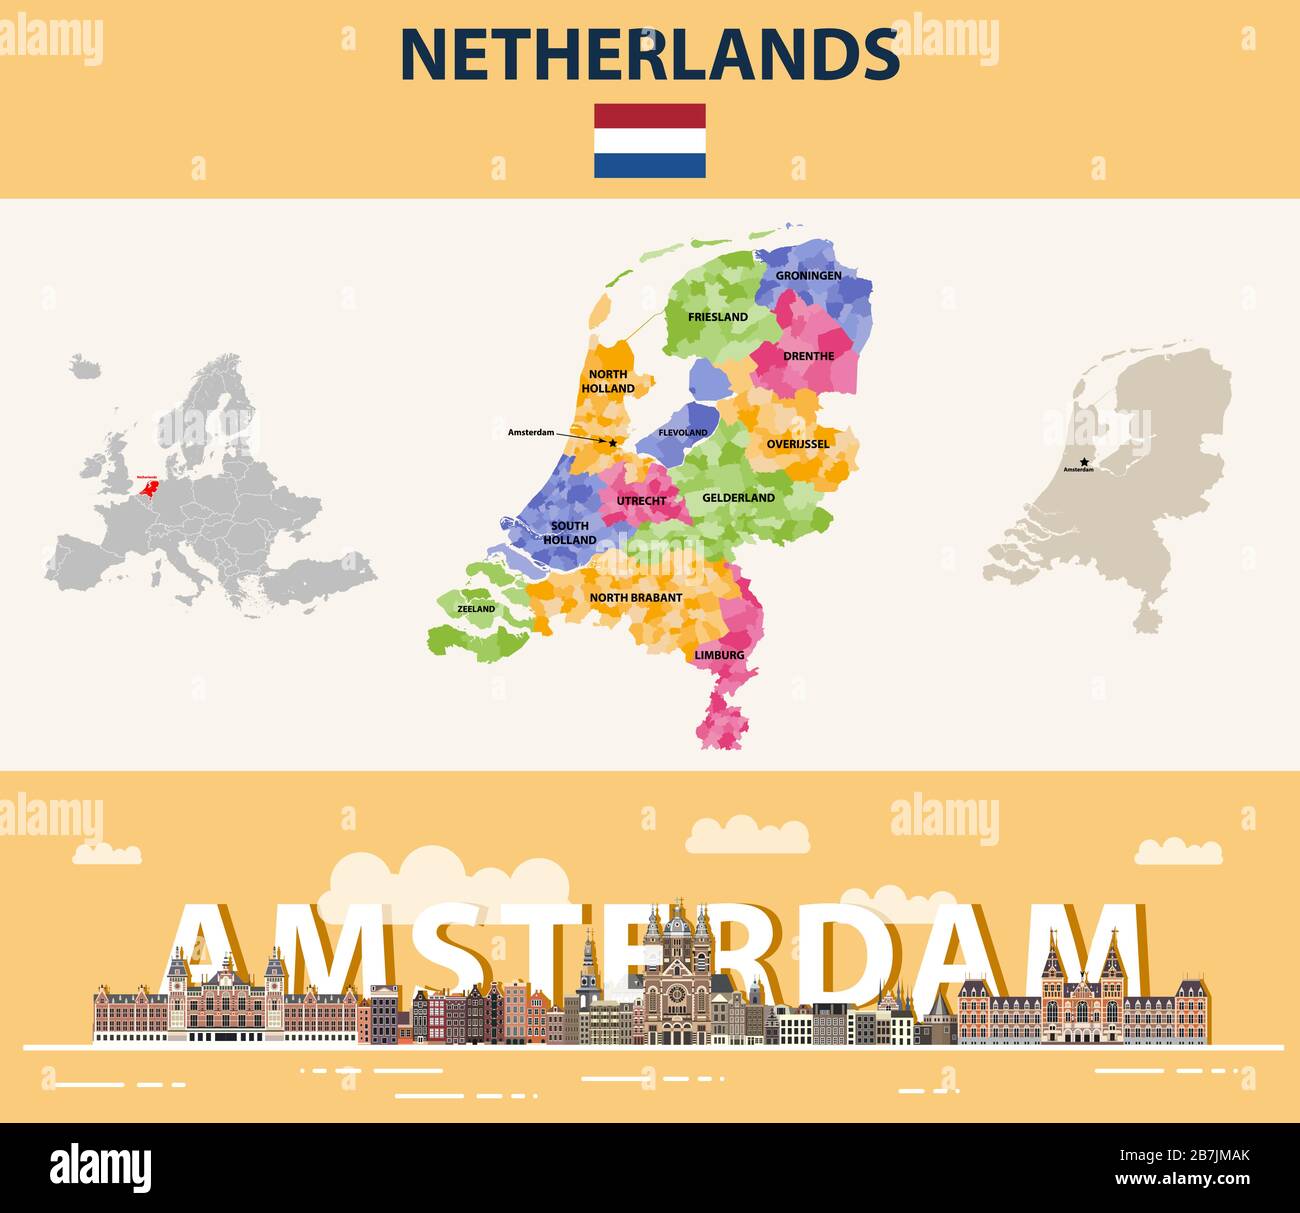 Lokale Gemeinden der Niederlande Karte nach Provinzen farblich gekennzeichnet. Buntes Plakat mit Stadtbild von Amsterdam. Vektorgrafiken Stock Vektor